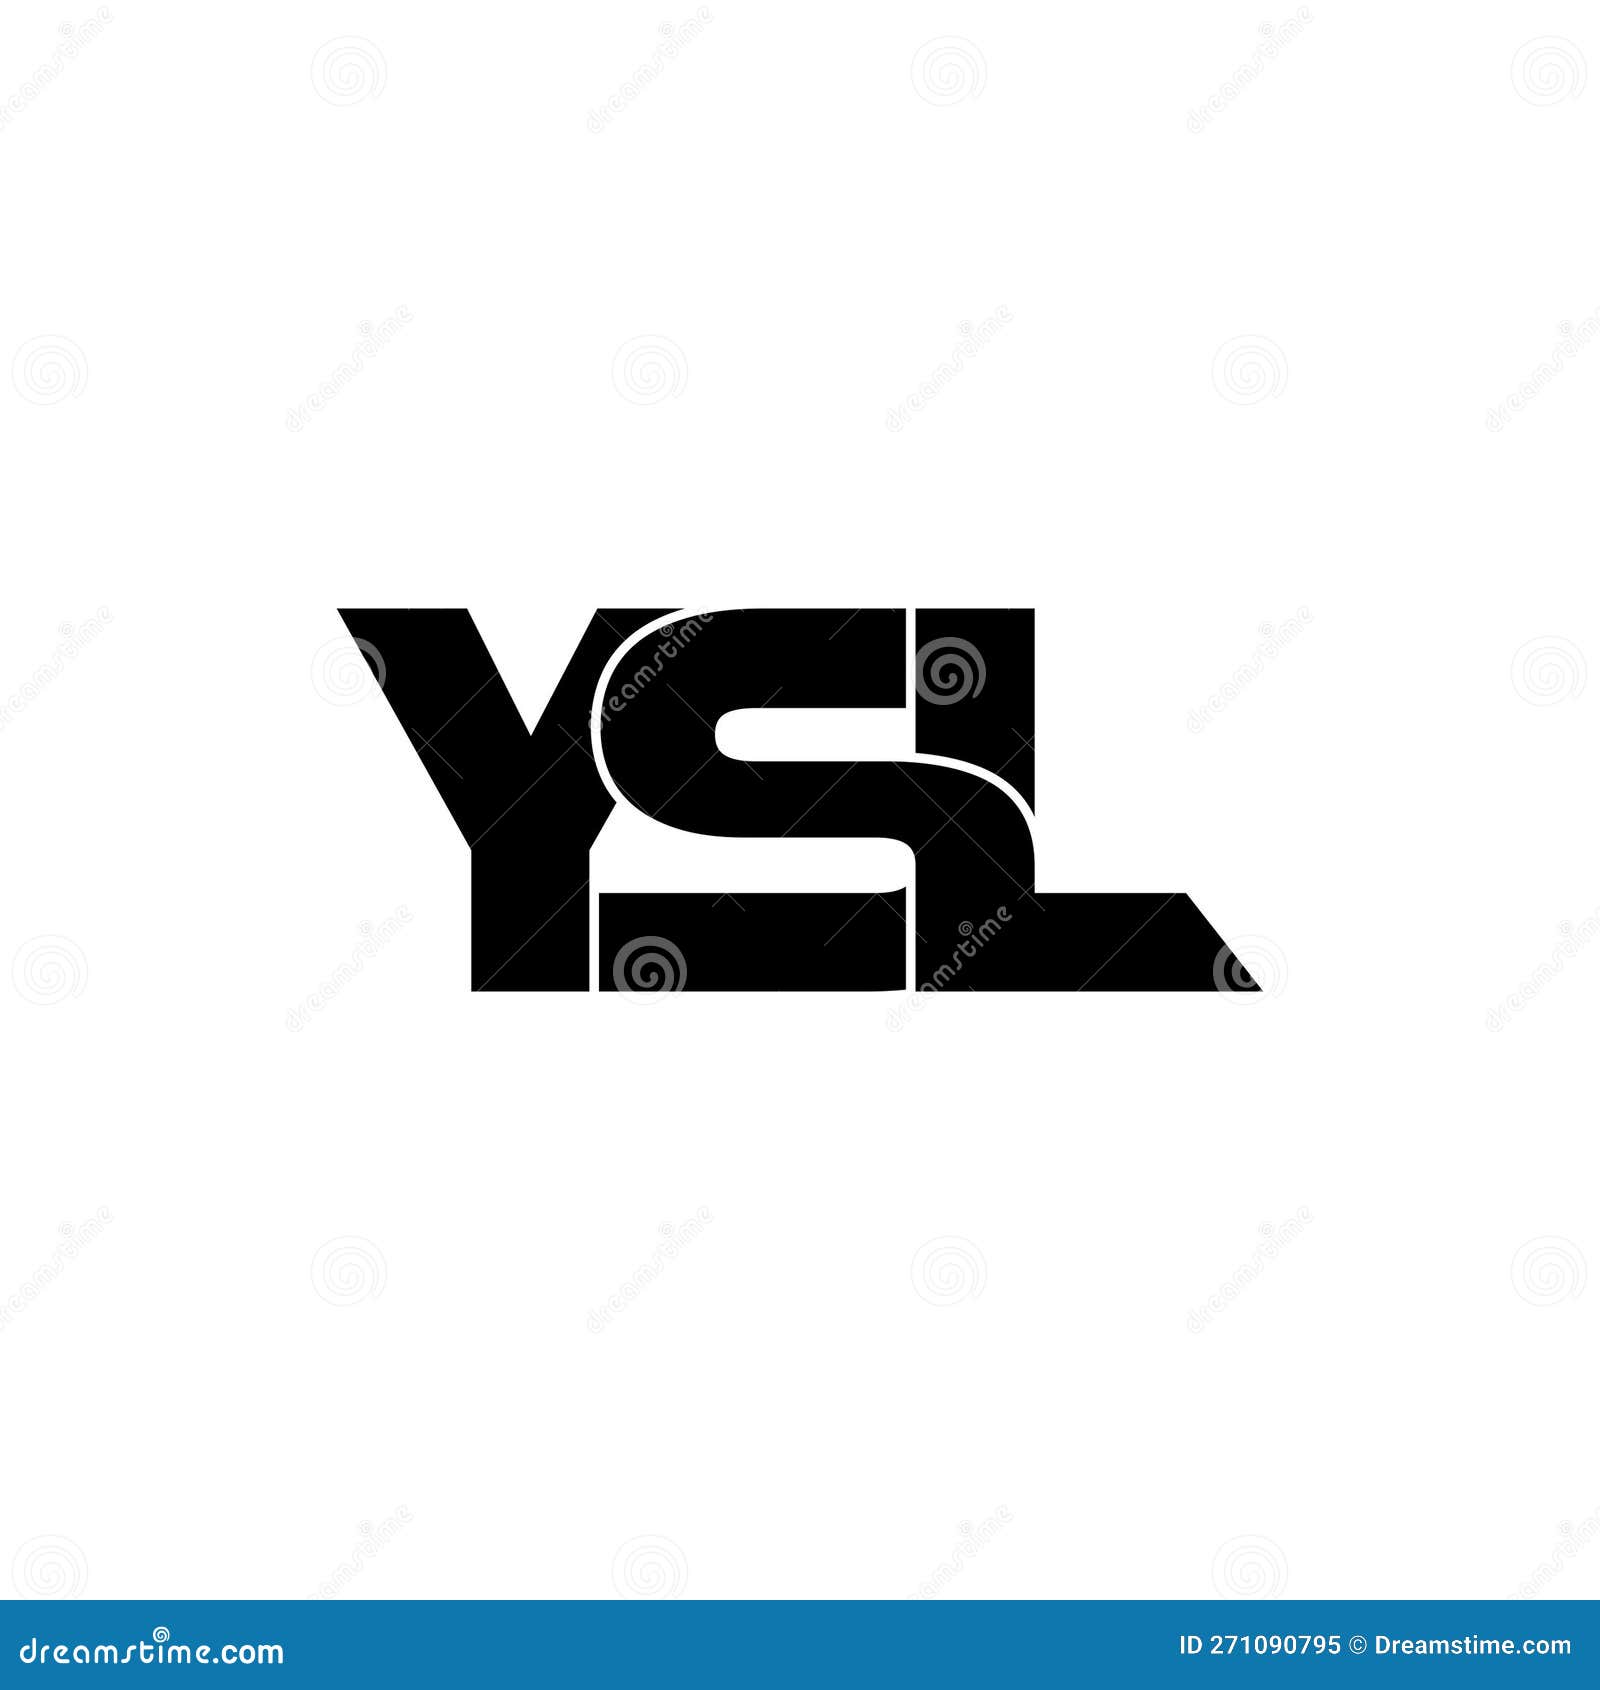 Ysl Stock Illustrations – 20 Ysl Stock Illustrations, Vectors & Clipart -  Dreamstime